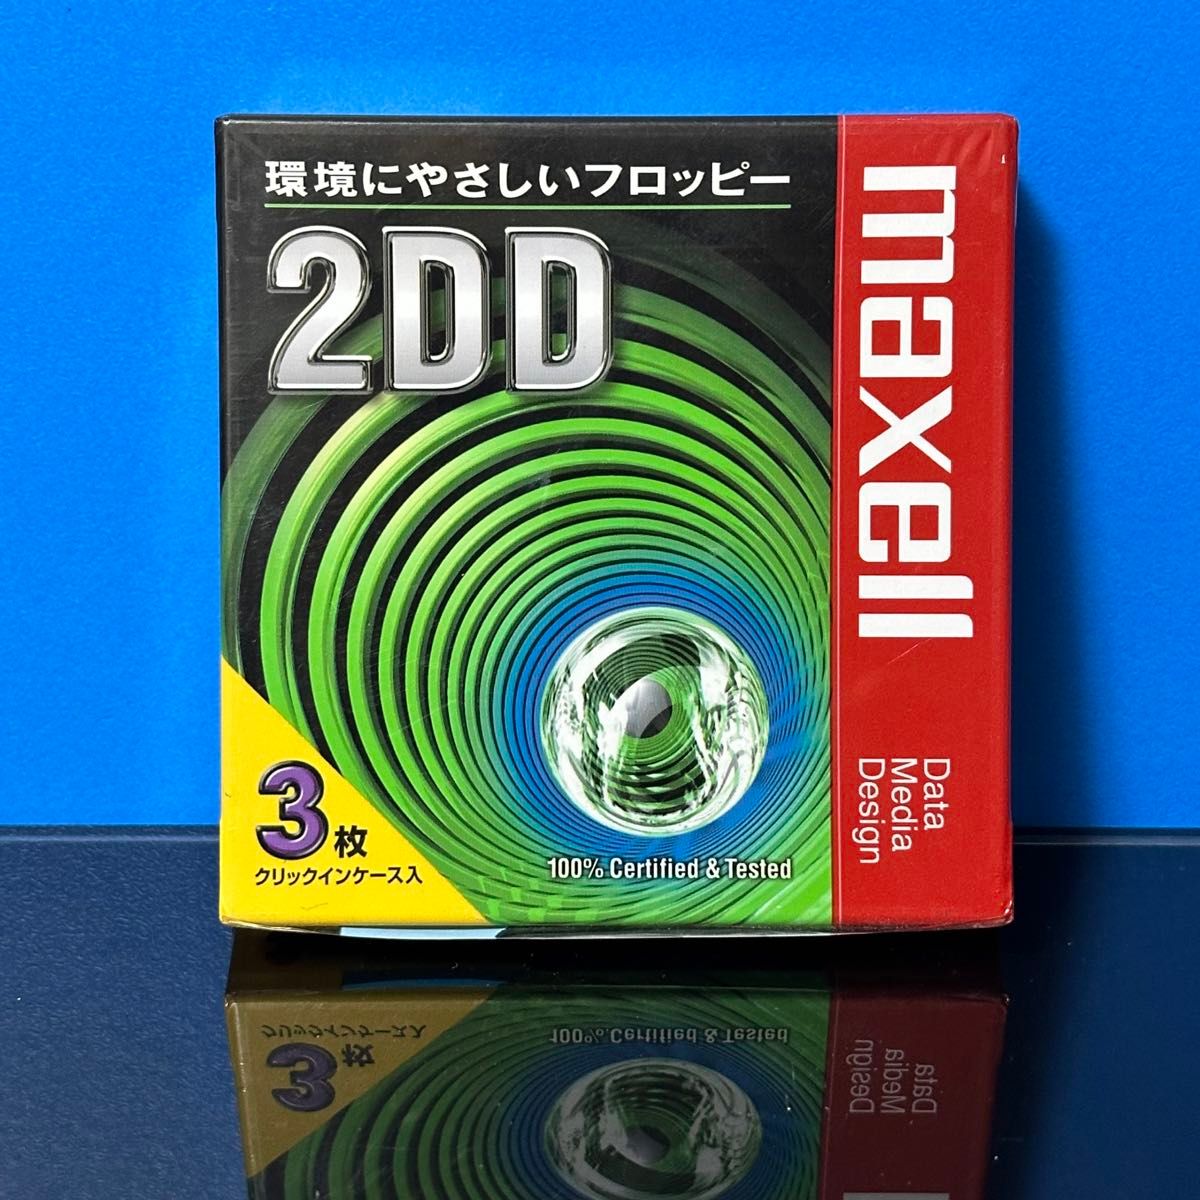 ☆新品･未開封 マクセル maxell 2DD フロッピーディスク 三枚セット